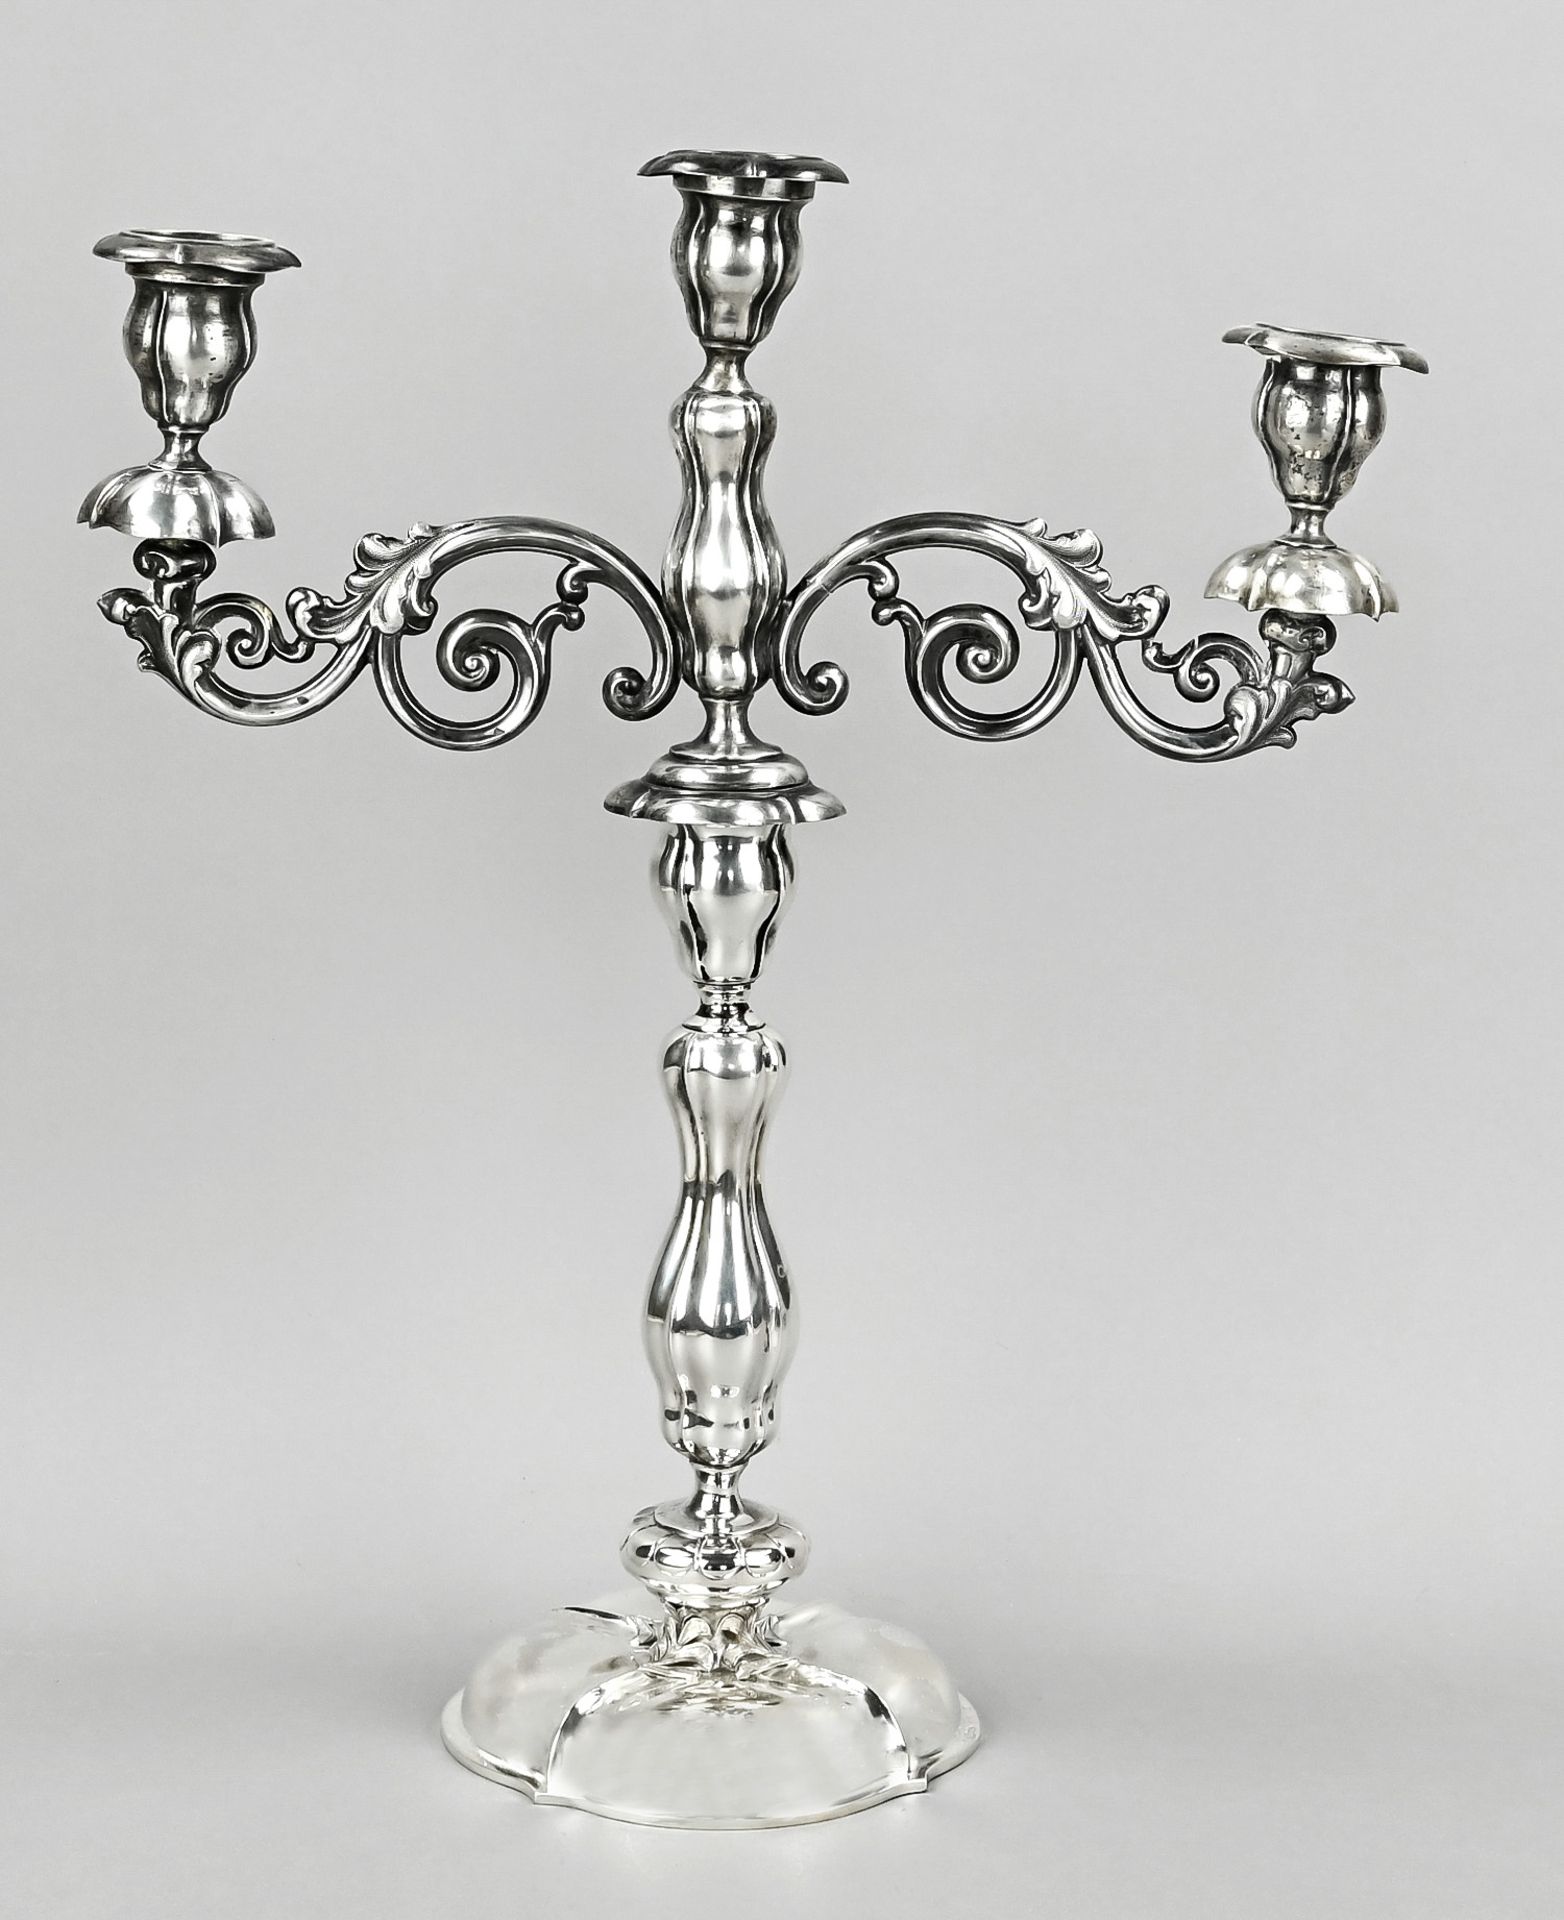 Silver candlestick, Karol Filip Malez (1797 Warsaw - 1867 Lotz), 84 hallmarked, dated 1853. Master 